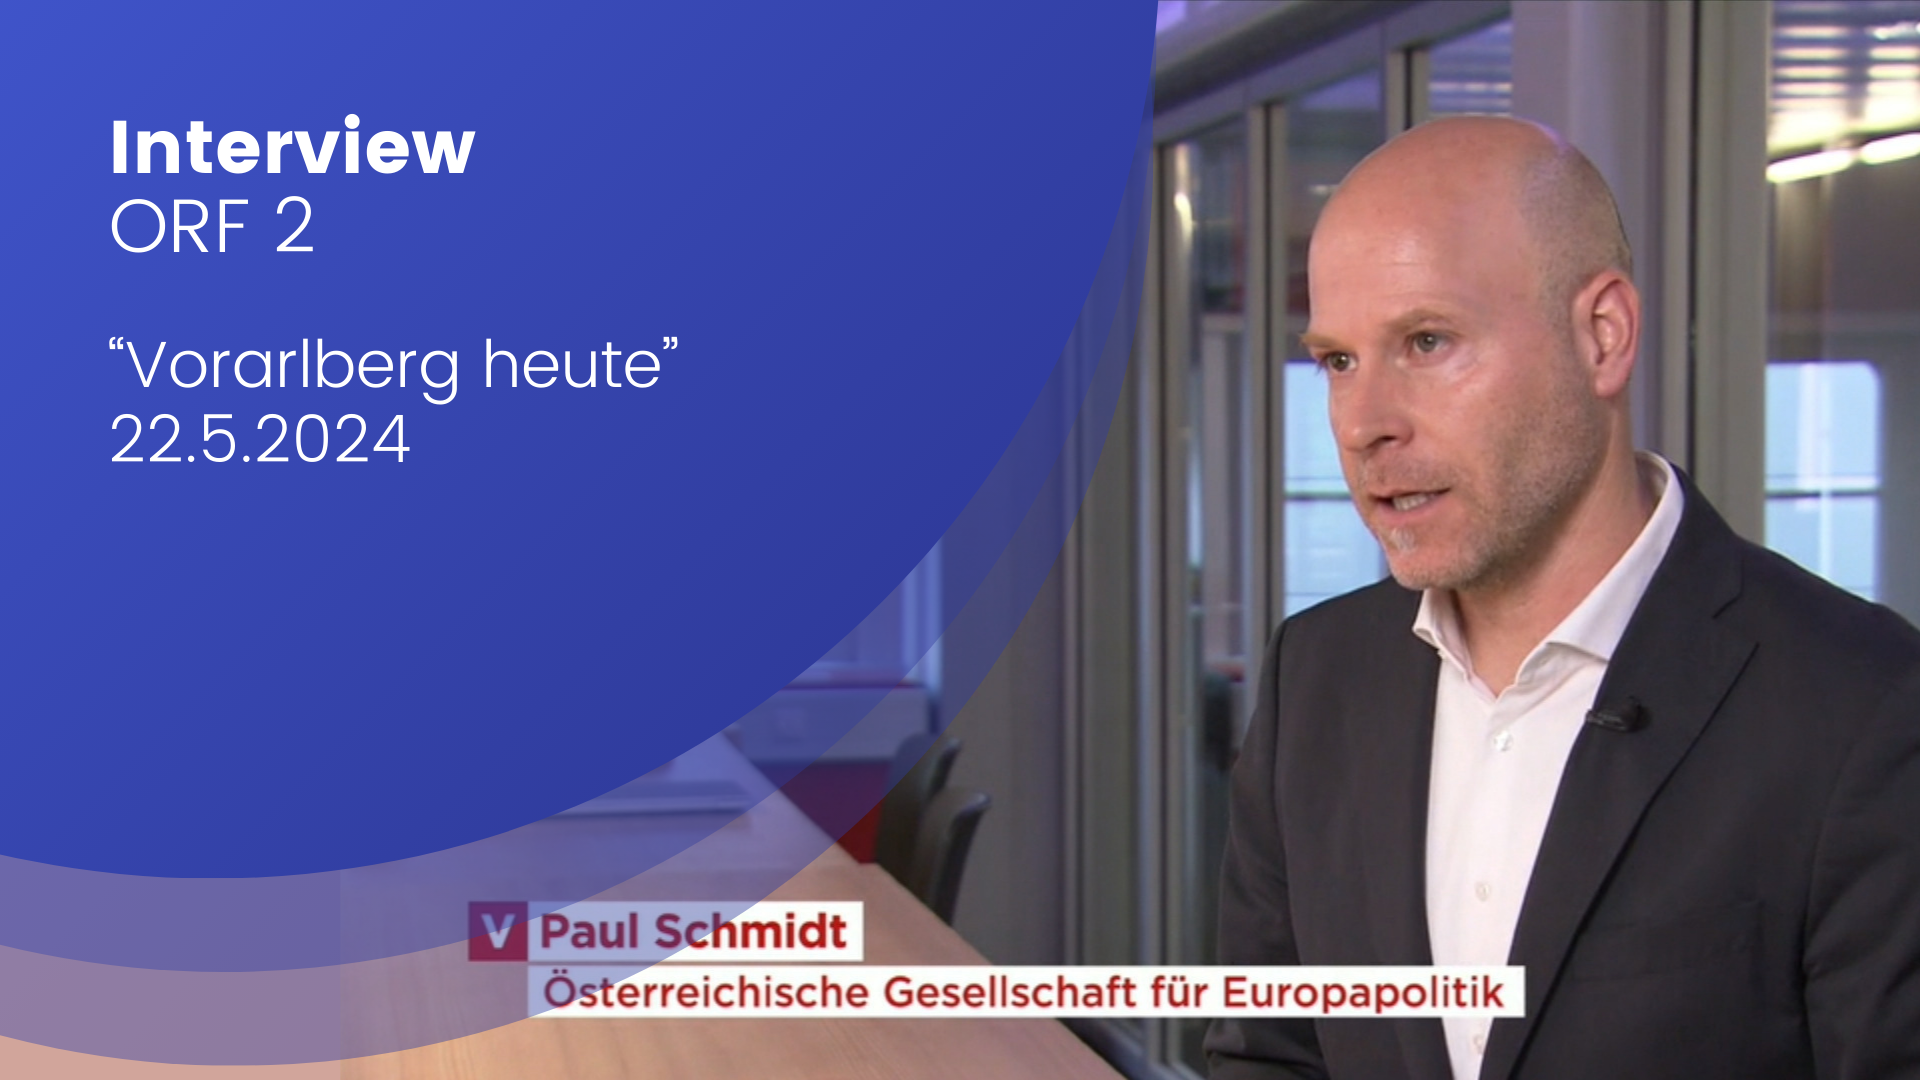 Paul Schmidt im Interview mit dem ORF zu sehen. Er ordnet die Umfrage Ergebnisse der Bundesländertour ein. Links im Titelbild steht "Interview ORF 2 Vorarlberg heute 22.05.2024".